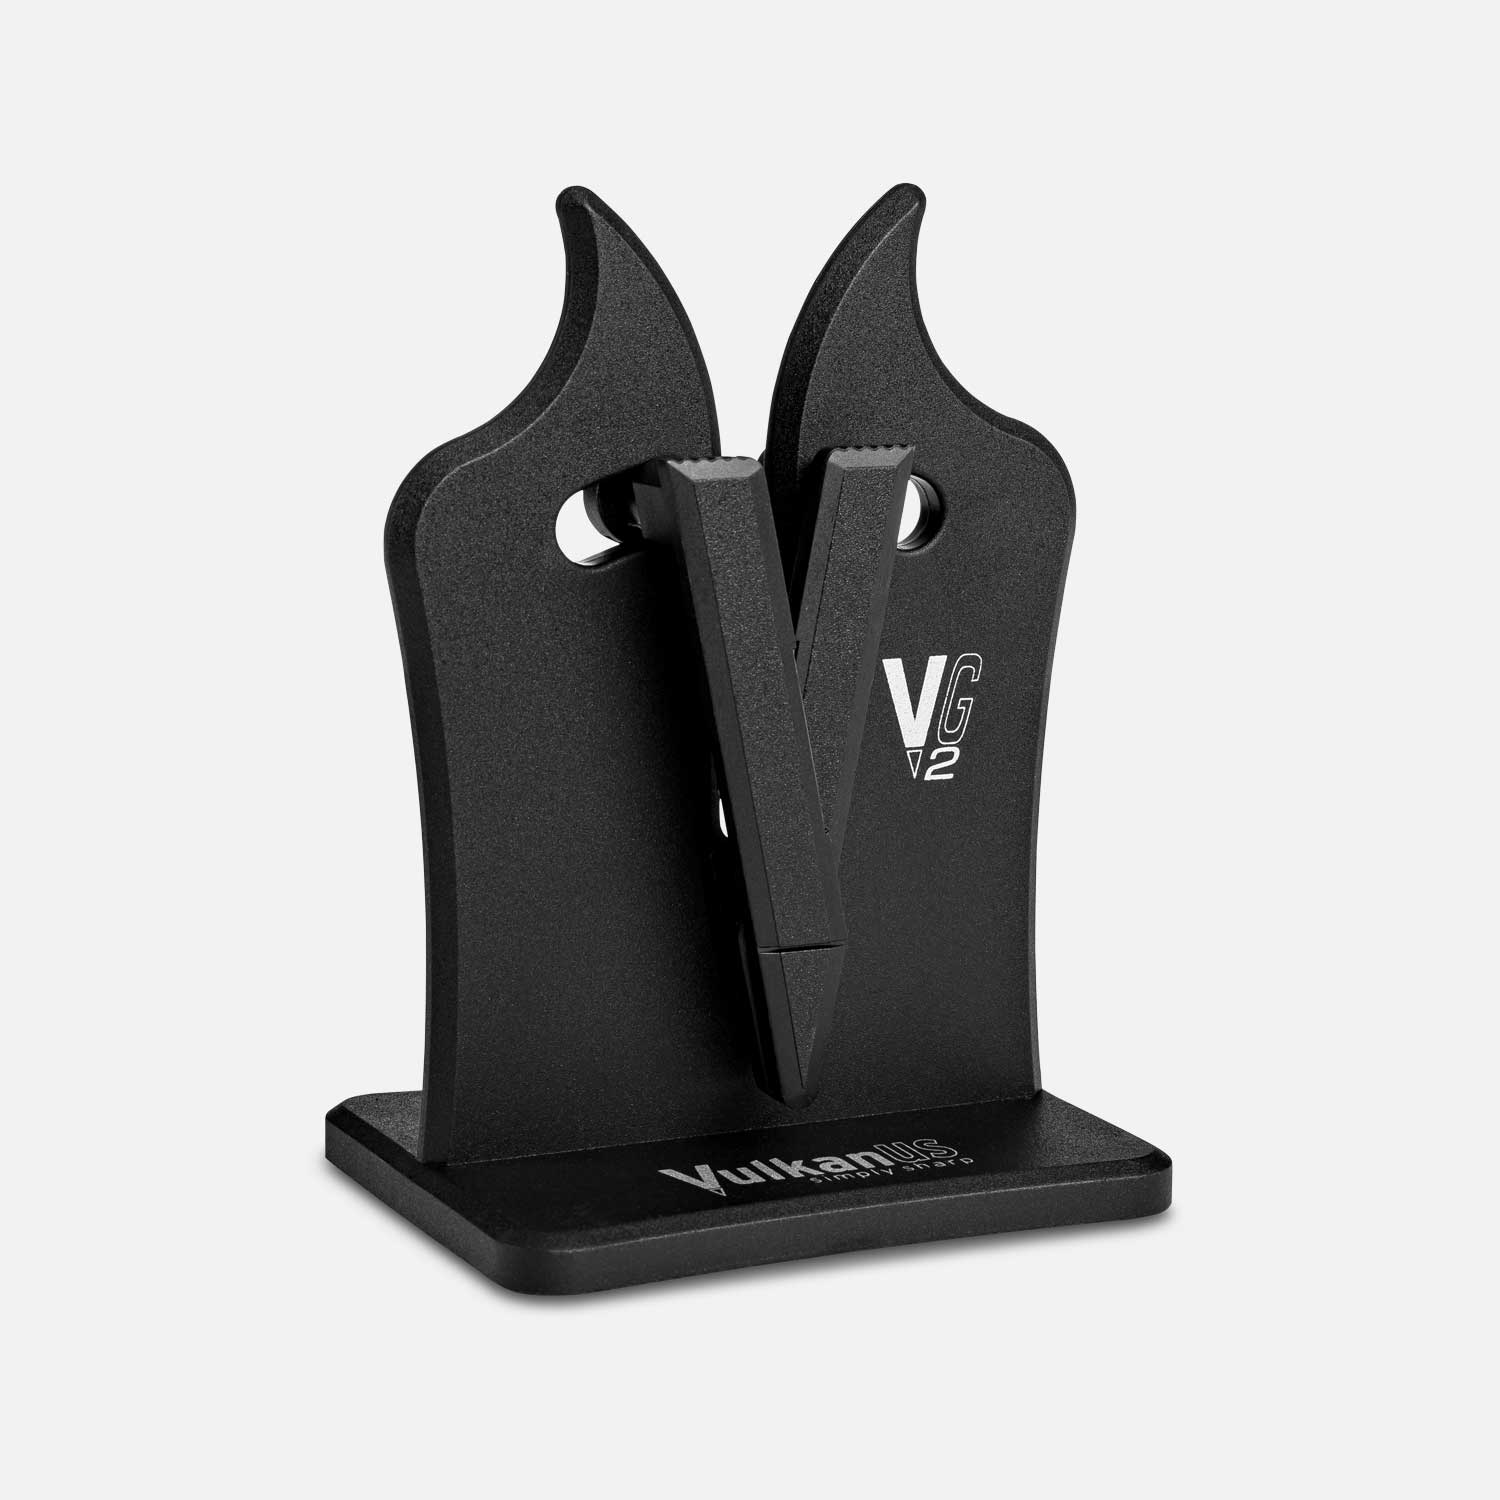 Vulkanus knife sharpener made of black plastic